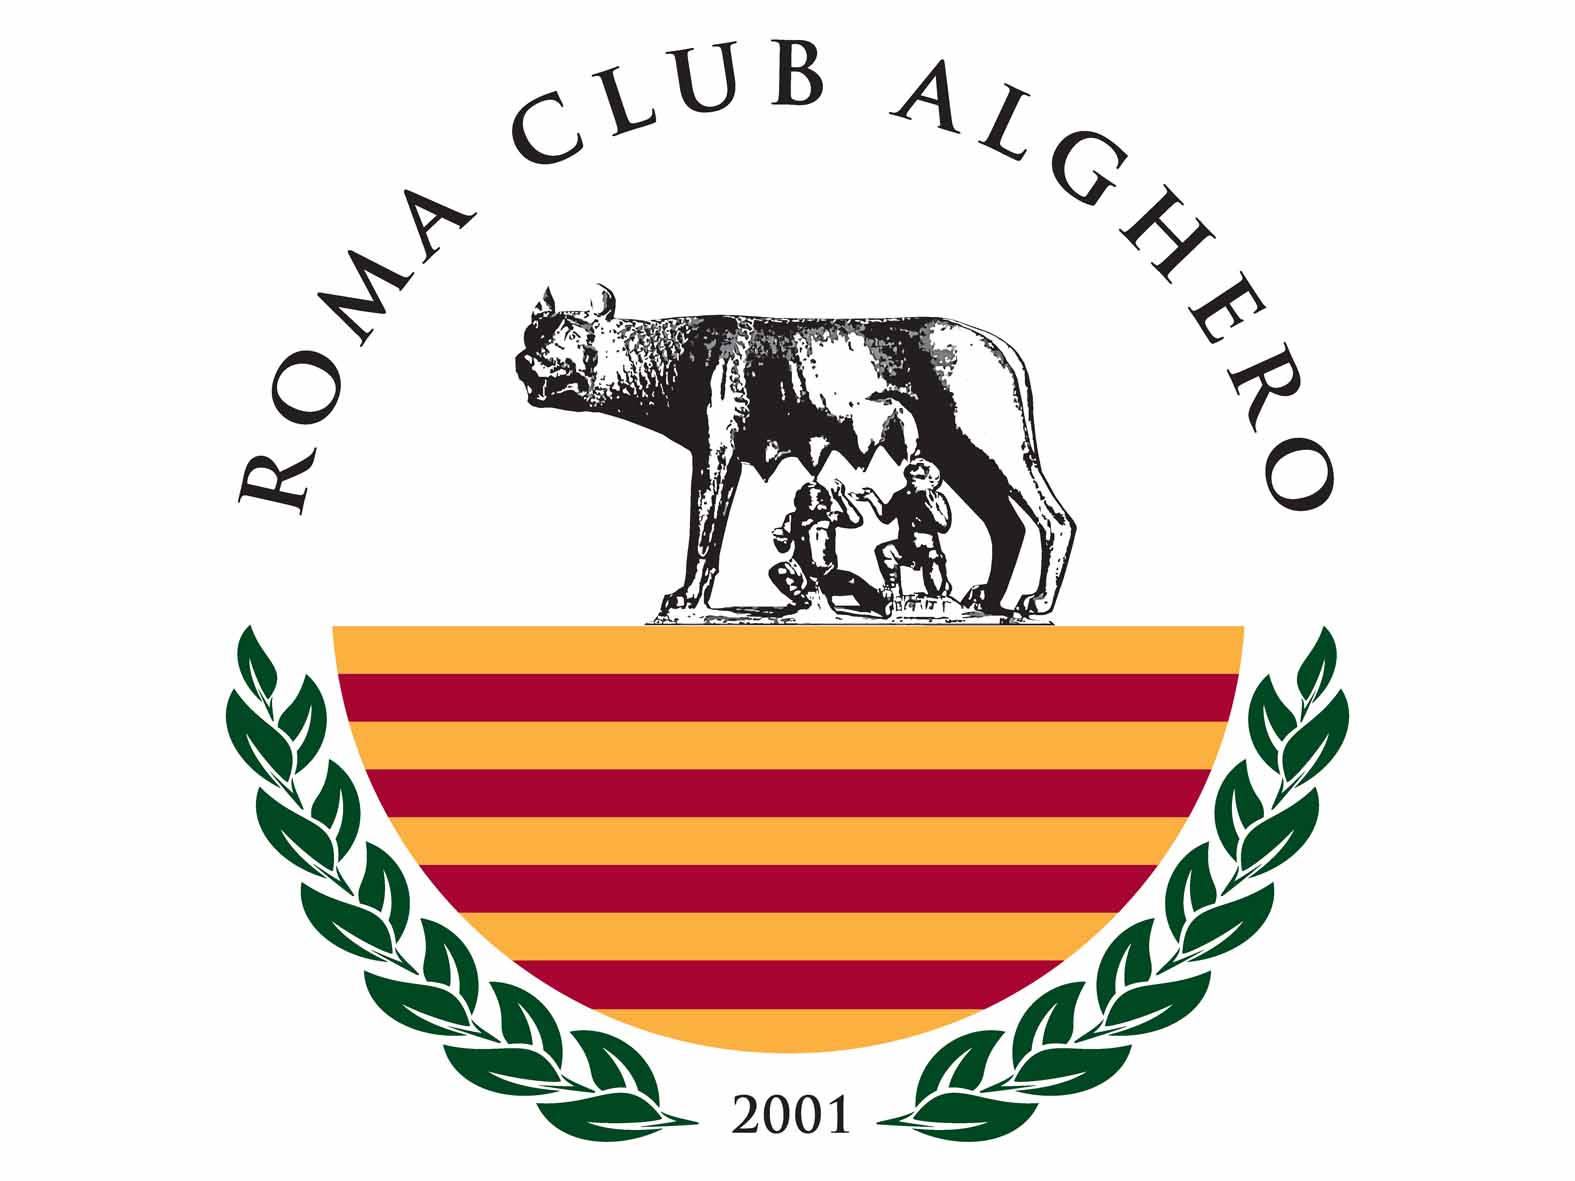 Roma Club Alghero